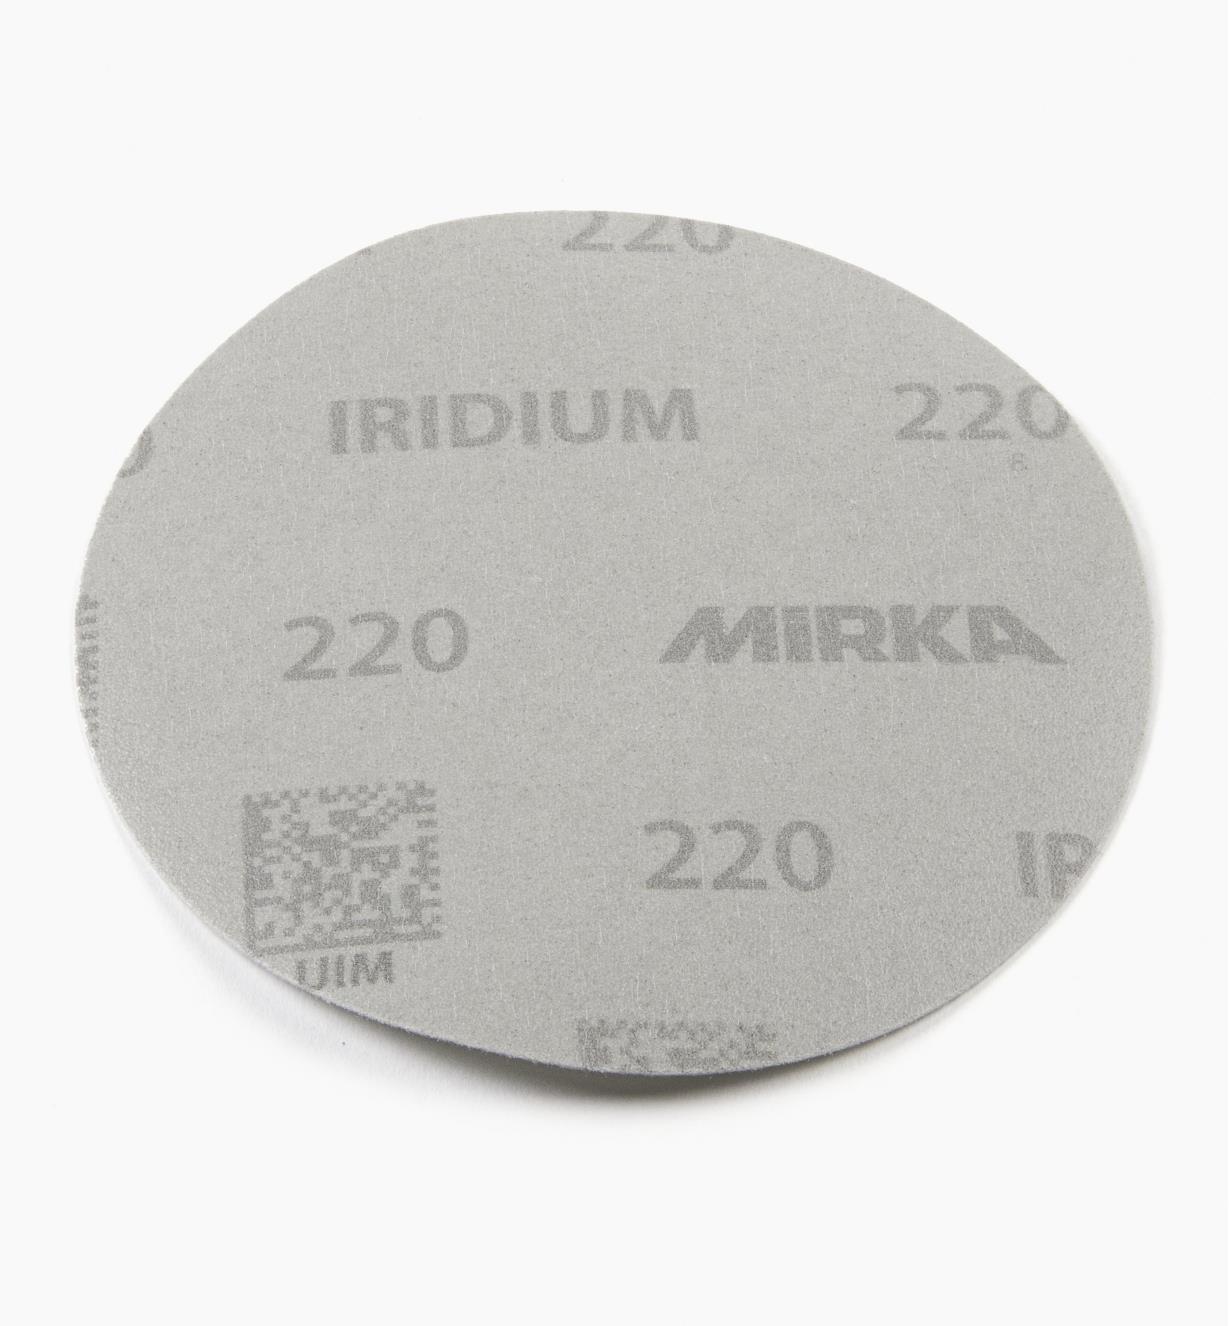 08K0946 - Disque abrasif autoagrippant Iridium, 5 po, sans trous, grain 220, l'unité